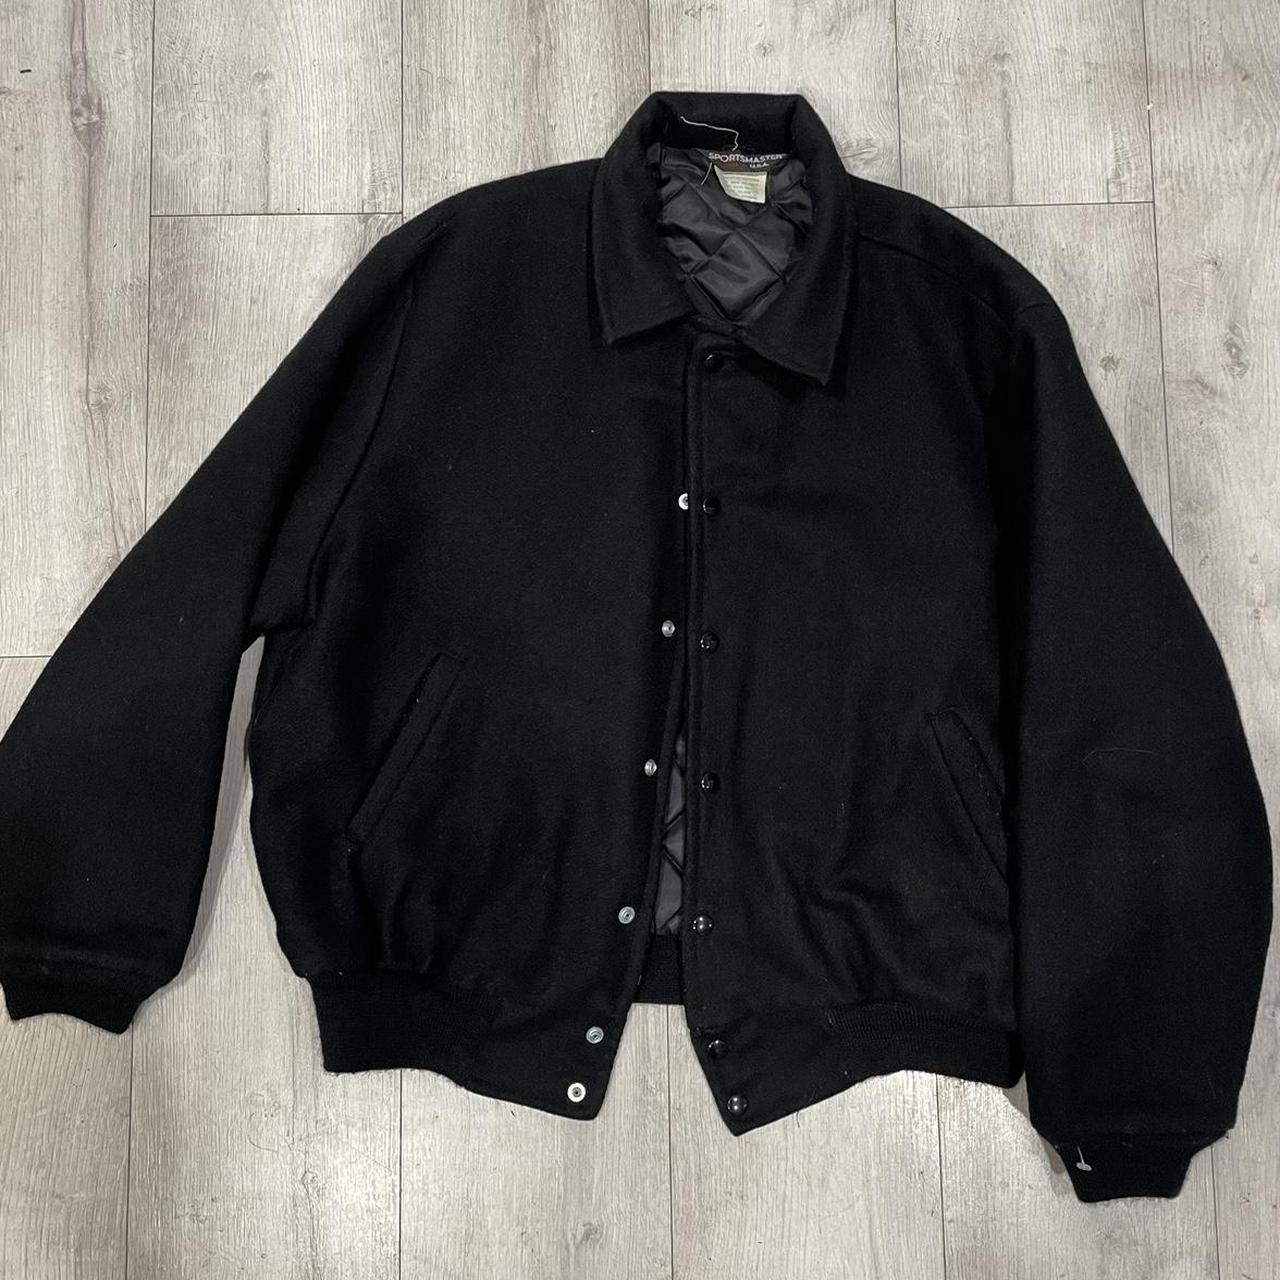 Vintage Black Letterman Jacket Size Large - Depop